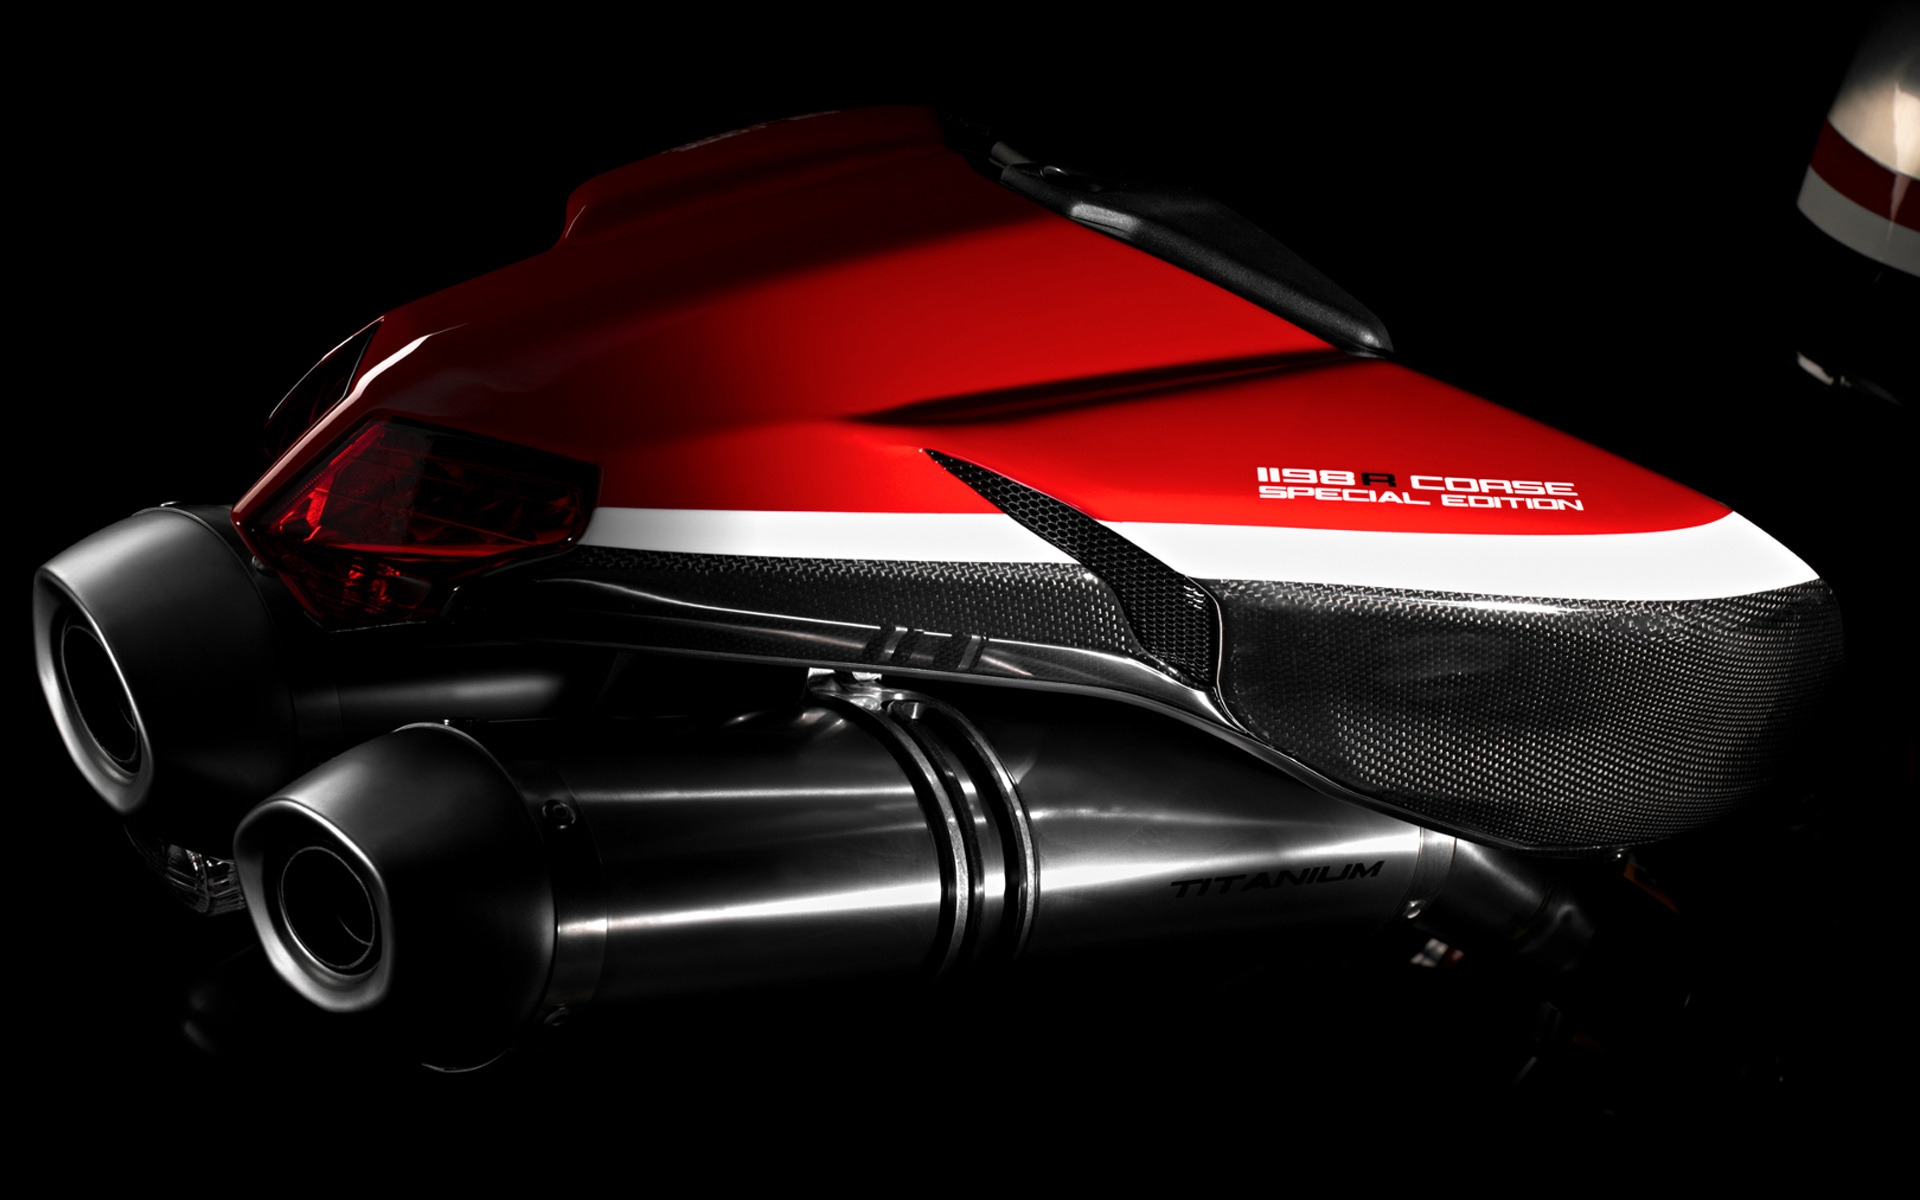 Ducati Superbike-1198-R-Corse Rear for 1920 x 1200 widescreen resolution